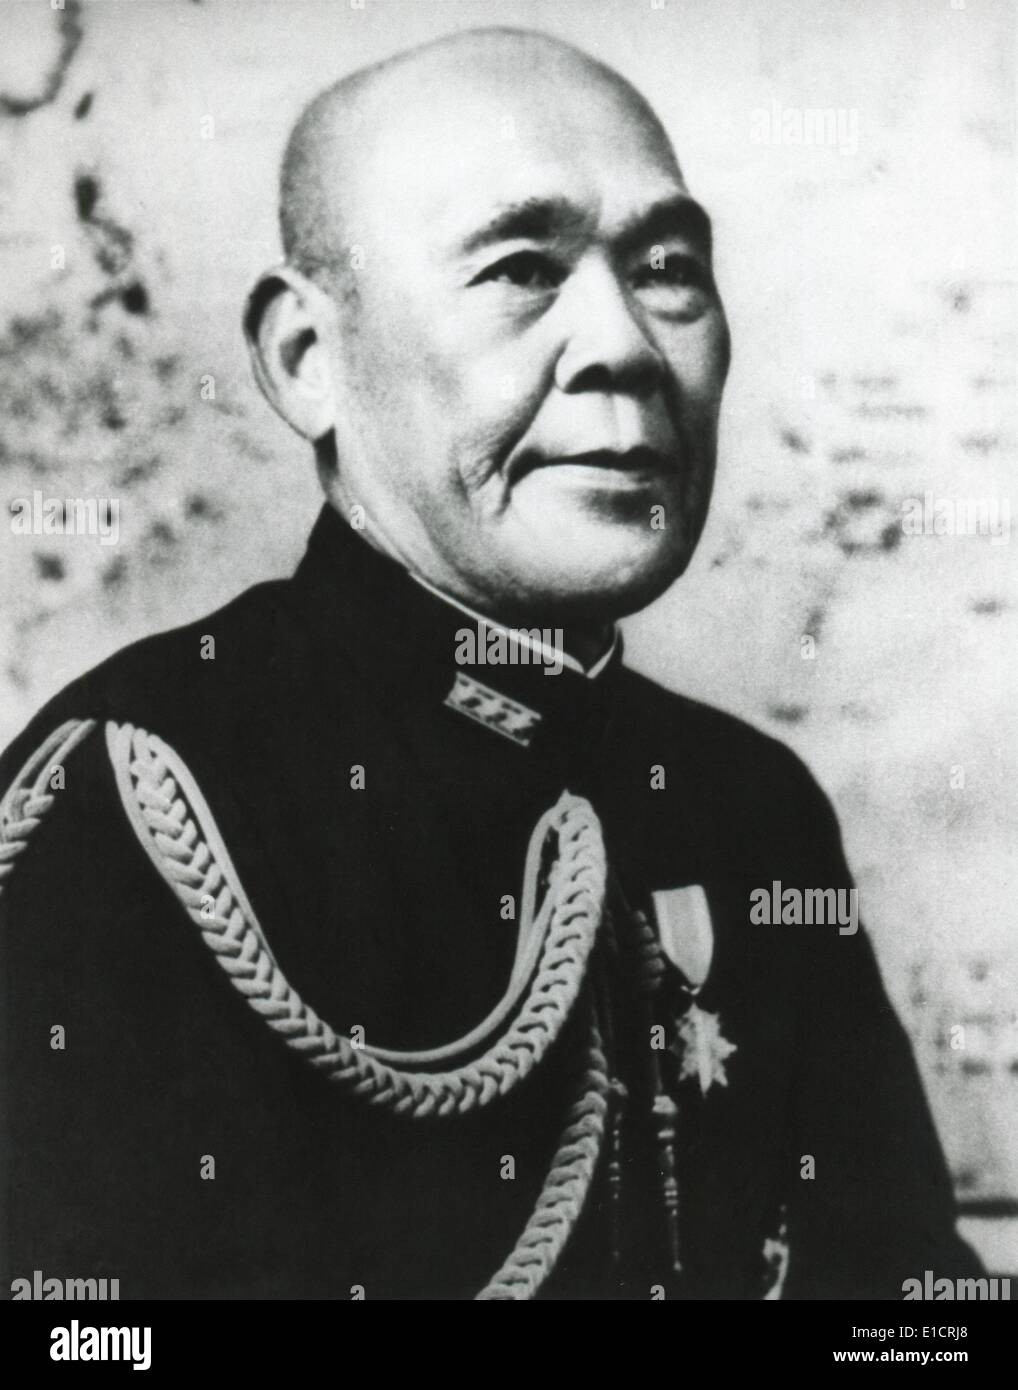 L'amiral Osami Nagano, chef japonais de Major Général de la Marine. Il a planifié et ordonné l'attaque sur Pearl Harbor, le 7 décembre 1941. Banque D'Images